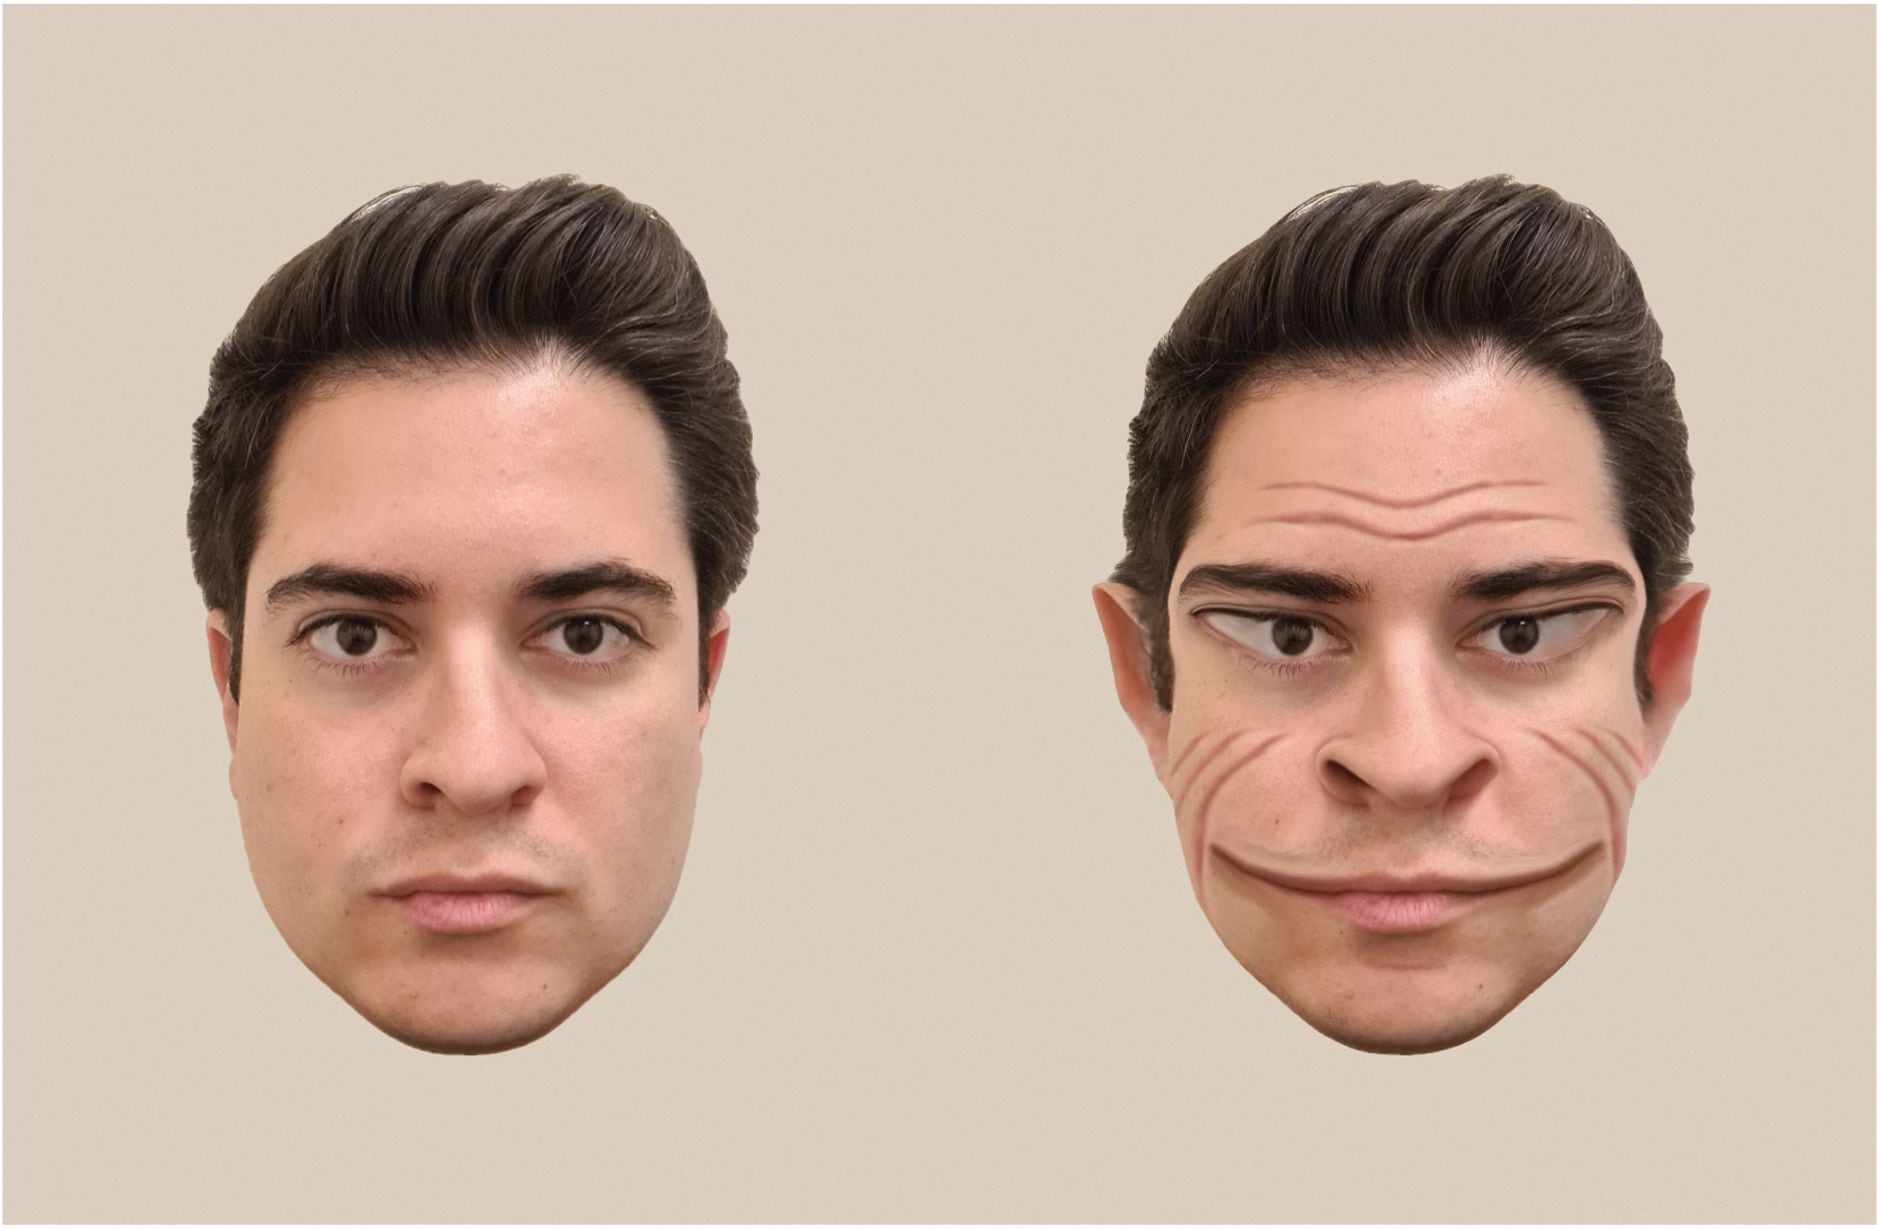 Visualización artística del investigador Antonio Mello que ilustra distorsiones faciales en un caso de prosopometamorfopsia. (Foto: AFP)